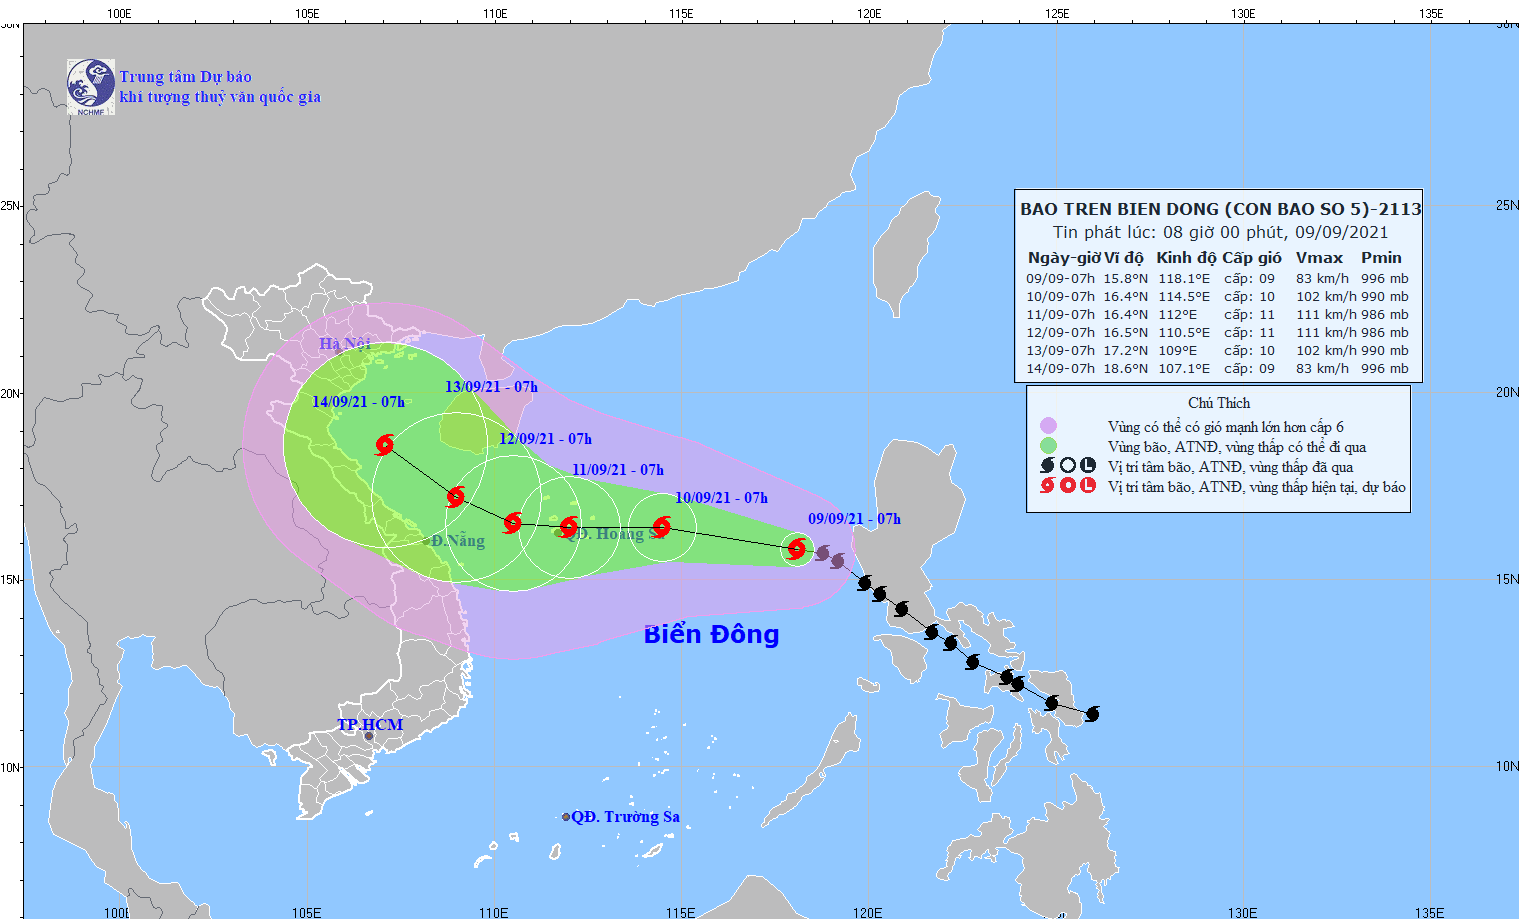 Bão số 5 - bão Conson cách quần đảo Hoàng Sa 670km, gió giật cấp 11